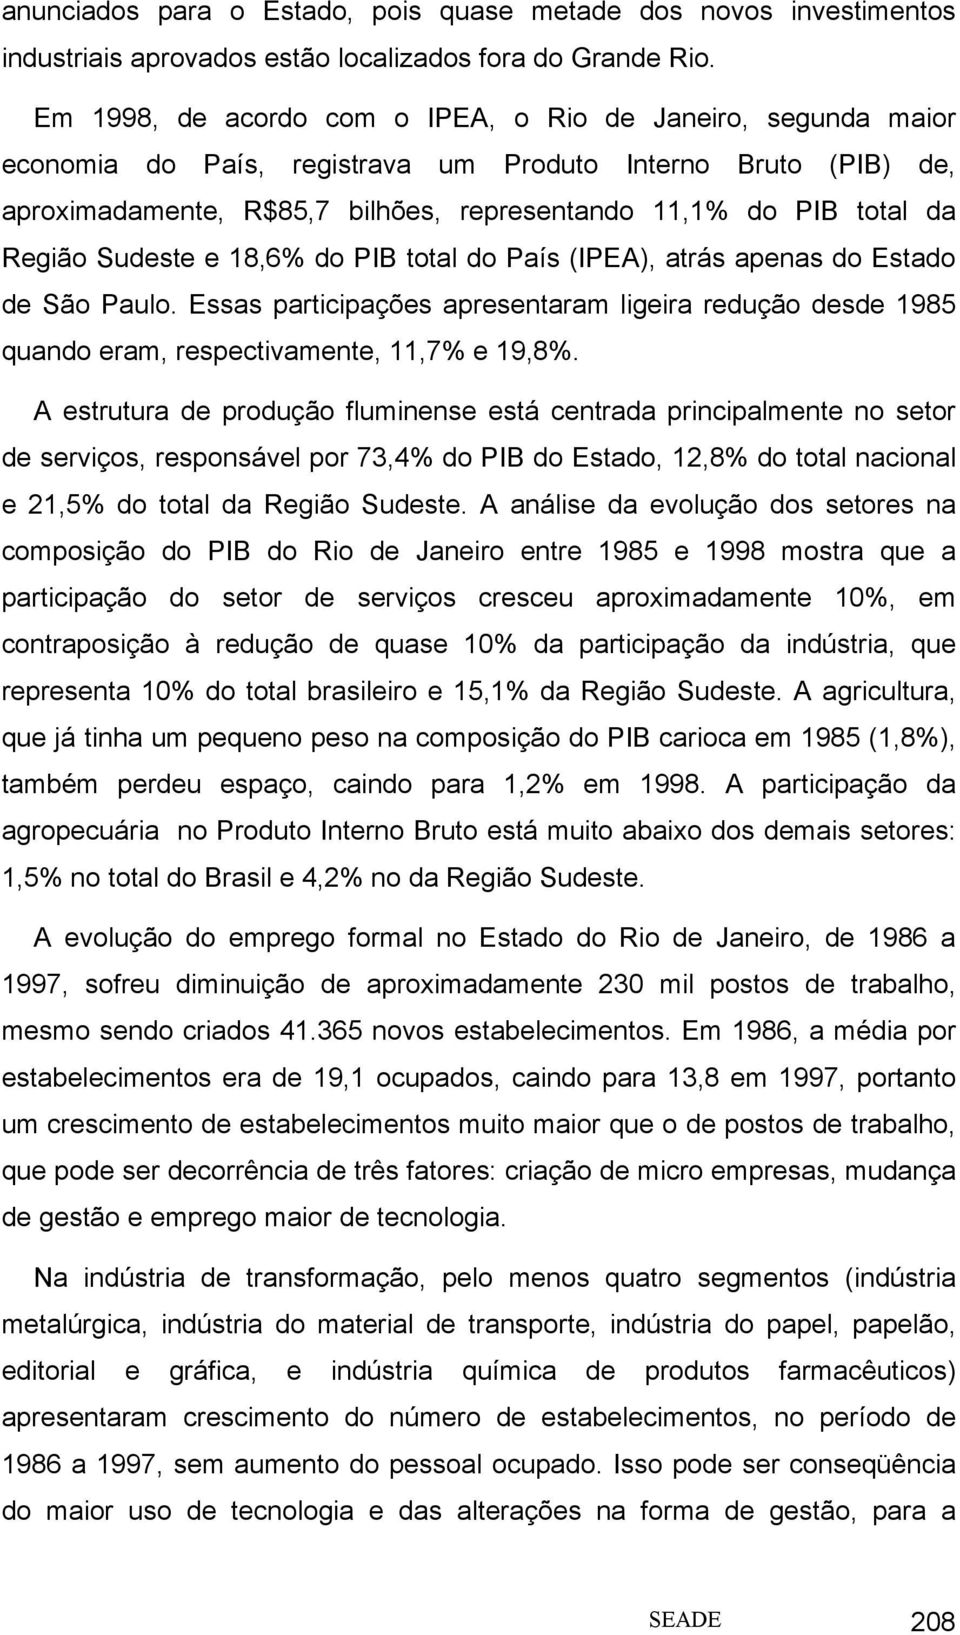 Região Sudeste e 18,6% do PIB total do País (IPEA), atrás apenas do Estado de São Paulo. Essas participações apresentaram ligeira redução desde 1985 quando eram, respectivamente, 11,7% e 19,8%.